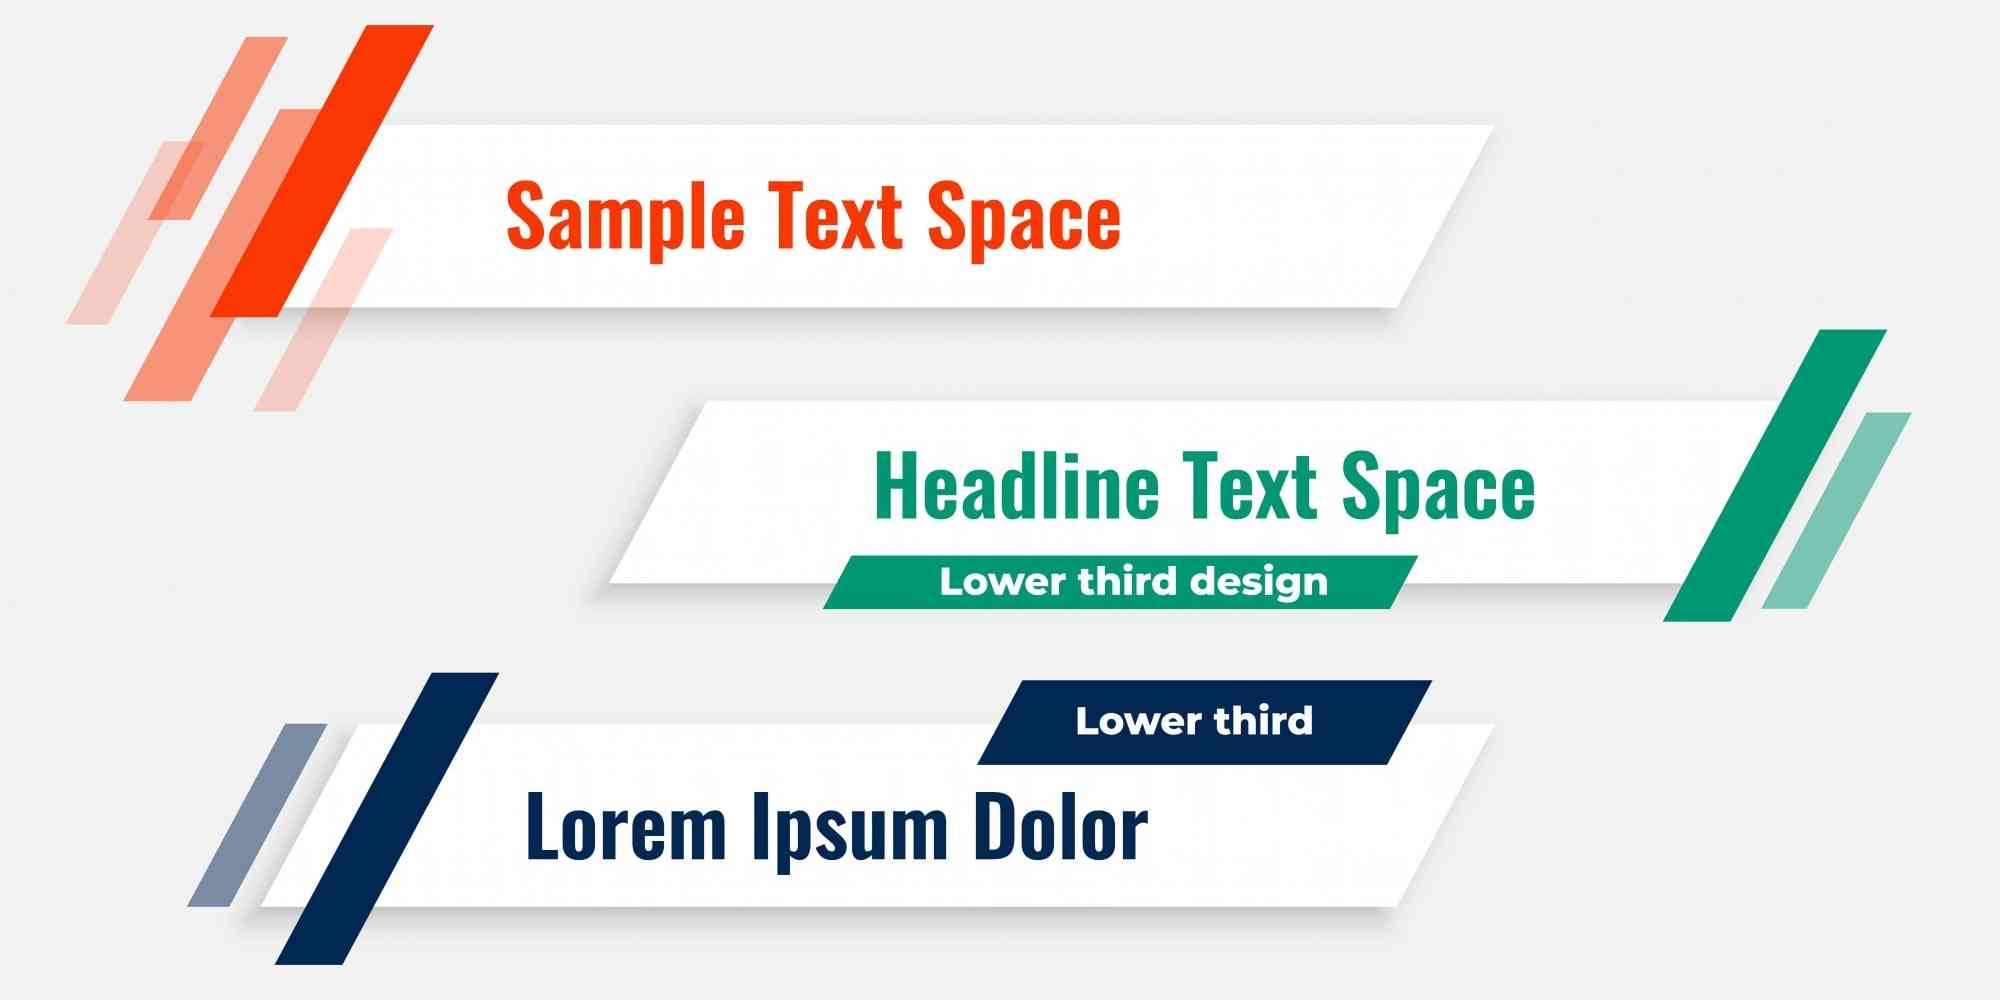 三个文本框，它们分别标注为"Sample Text Space"、"Headline Text Space"和"Lower third design"。每个文本框都有不同的颜色背景，分别是橙色、绿色和白色。在这些文本框中，还包含了一些示例文字，如"Lorem Ipsum dolor"。